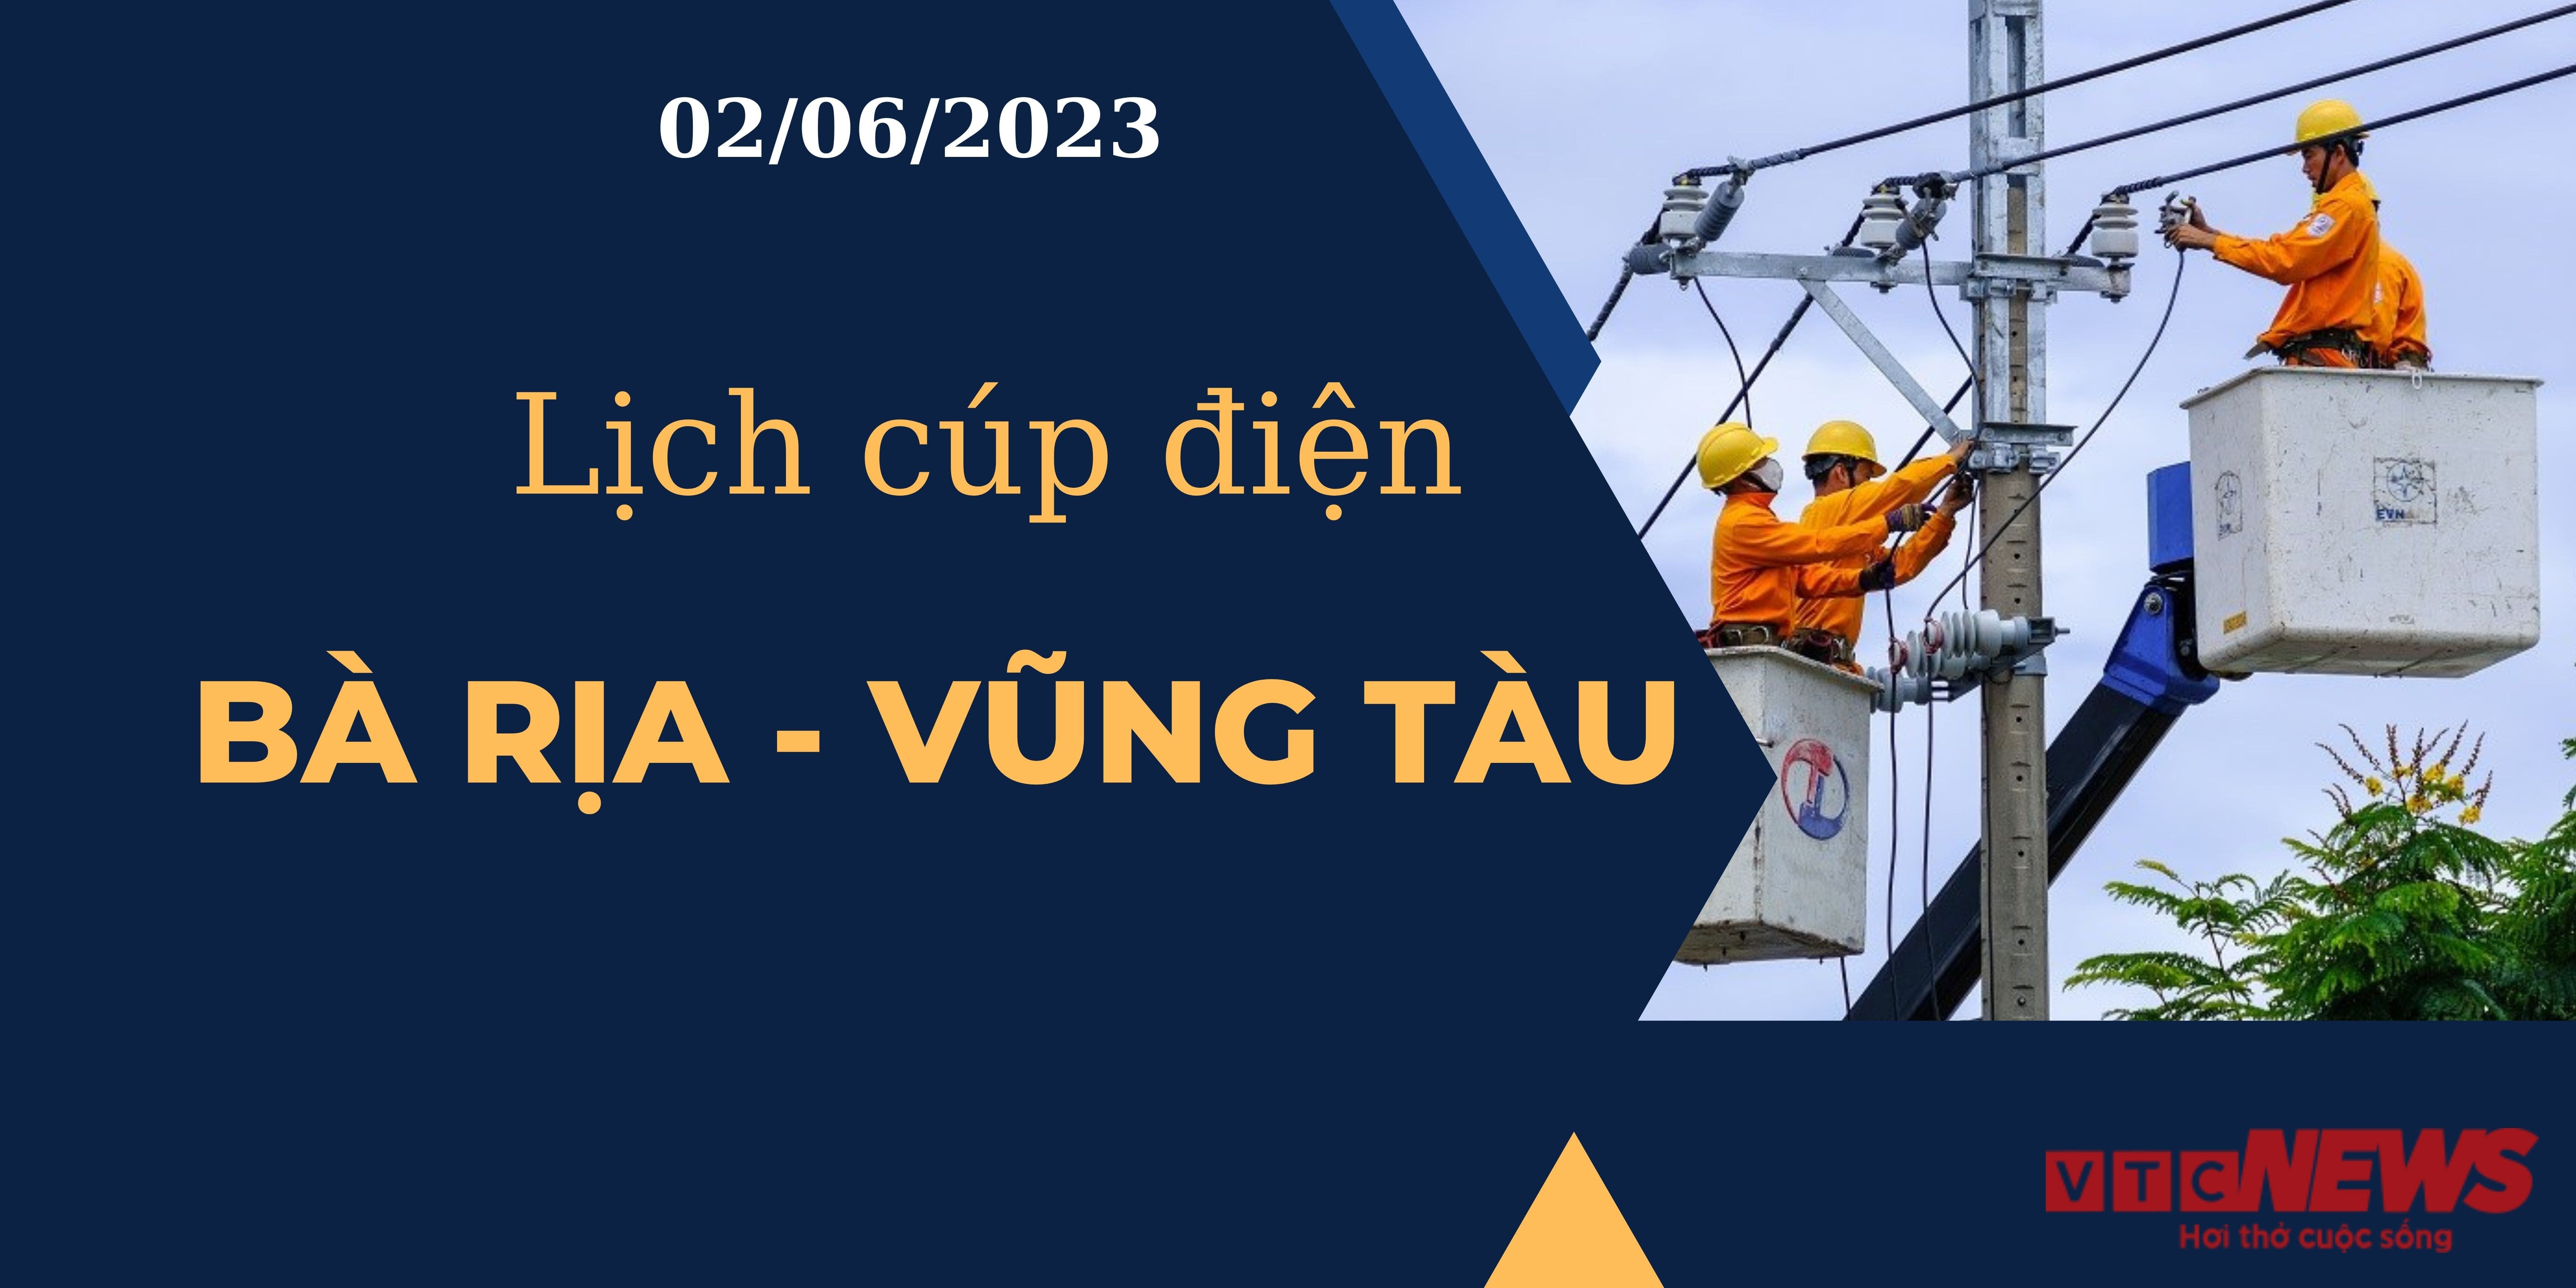 Lịch cúp điện hôm nay ngày 02/06/2023 tại Bà Rịa - Vũng Tàu - 1